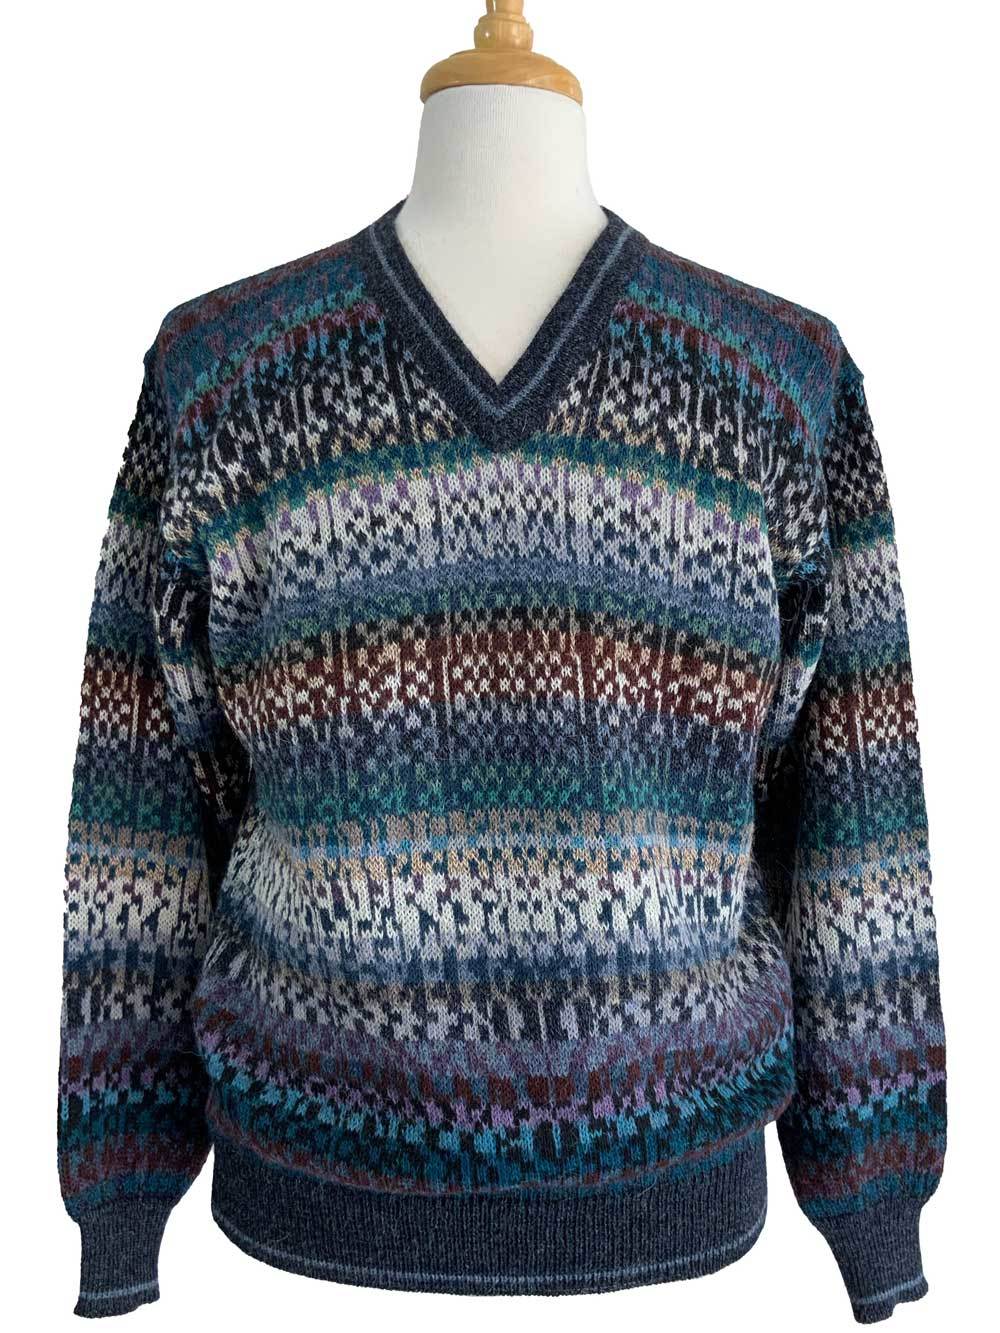 Owen V-Neck Sweater Teal Multi - 1